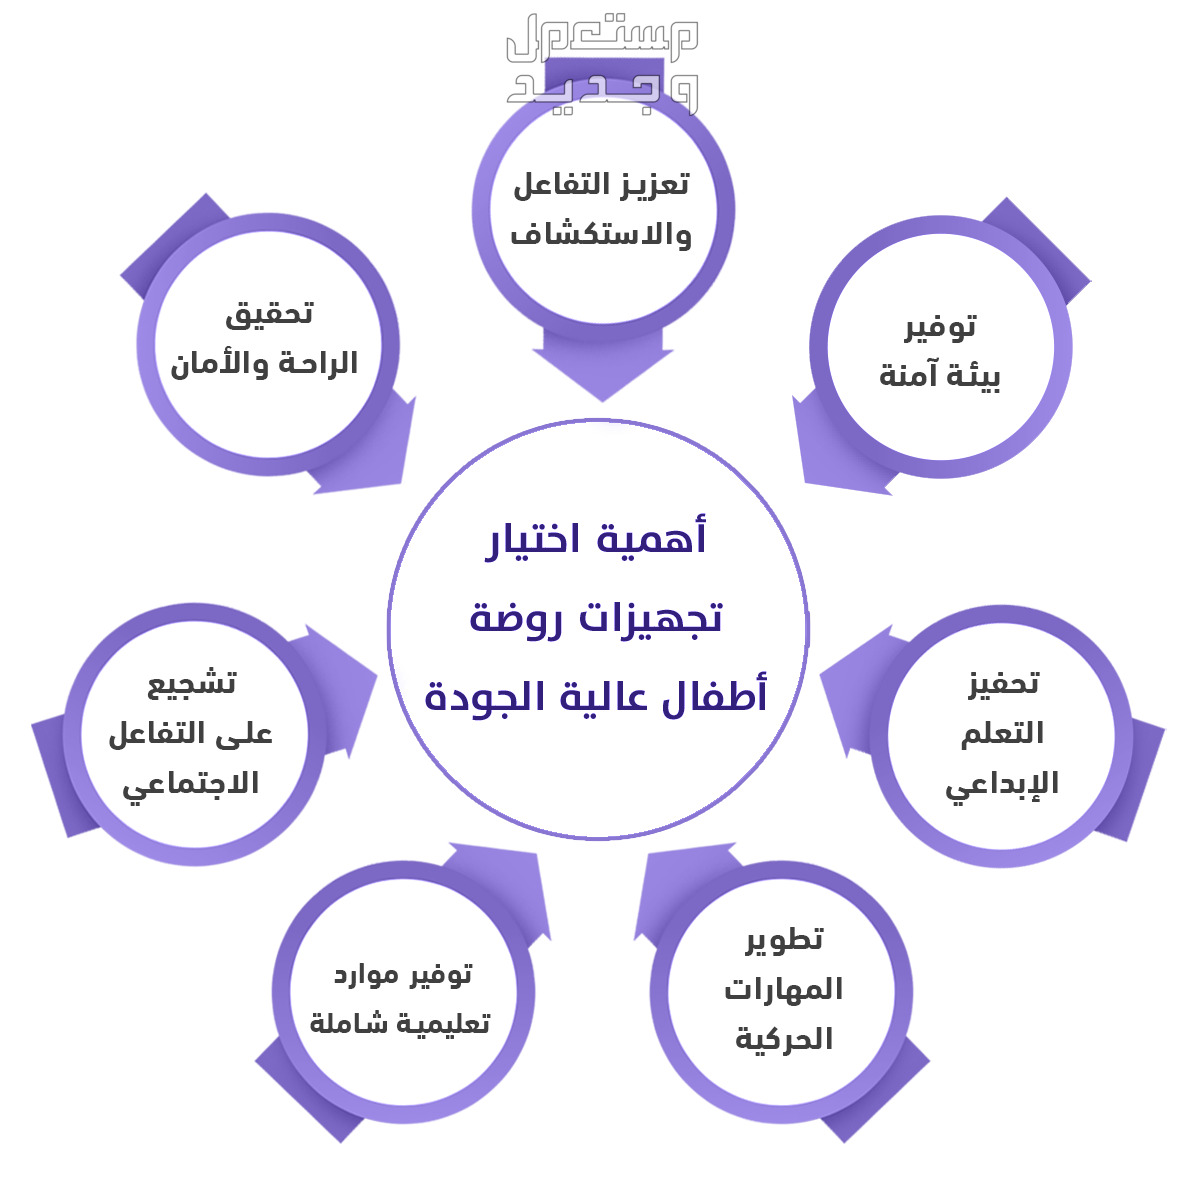 "متجر مصادر التعلم" الأفضل لتجهيز الروضات والمدارس في الرياض "متجر مصادر التعلم لتجهيز الروضات"